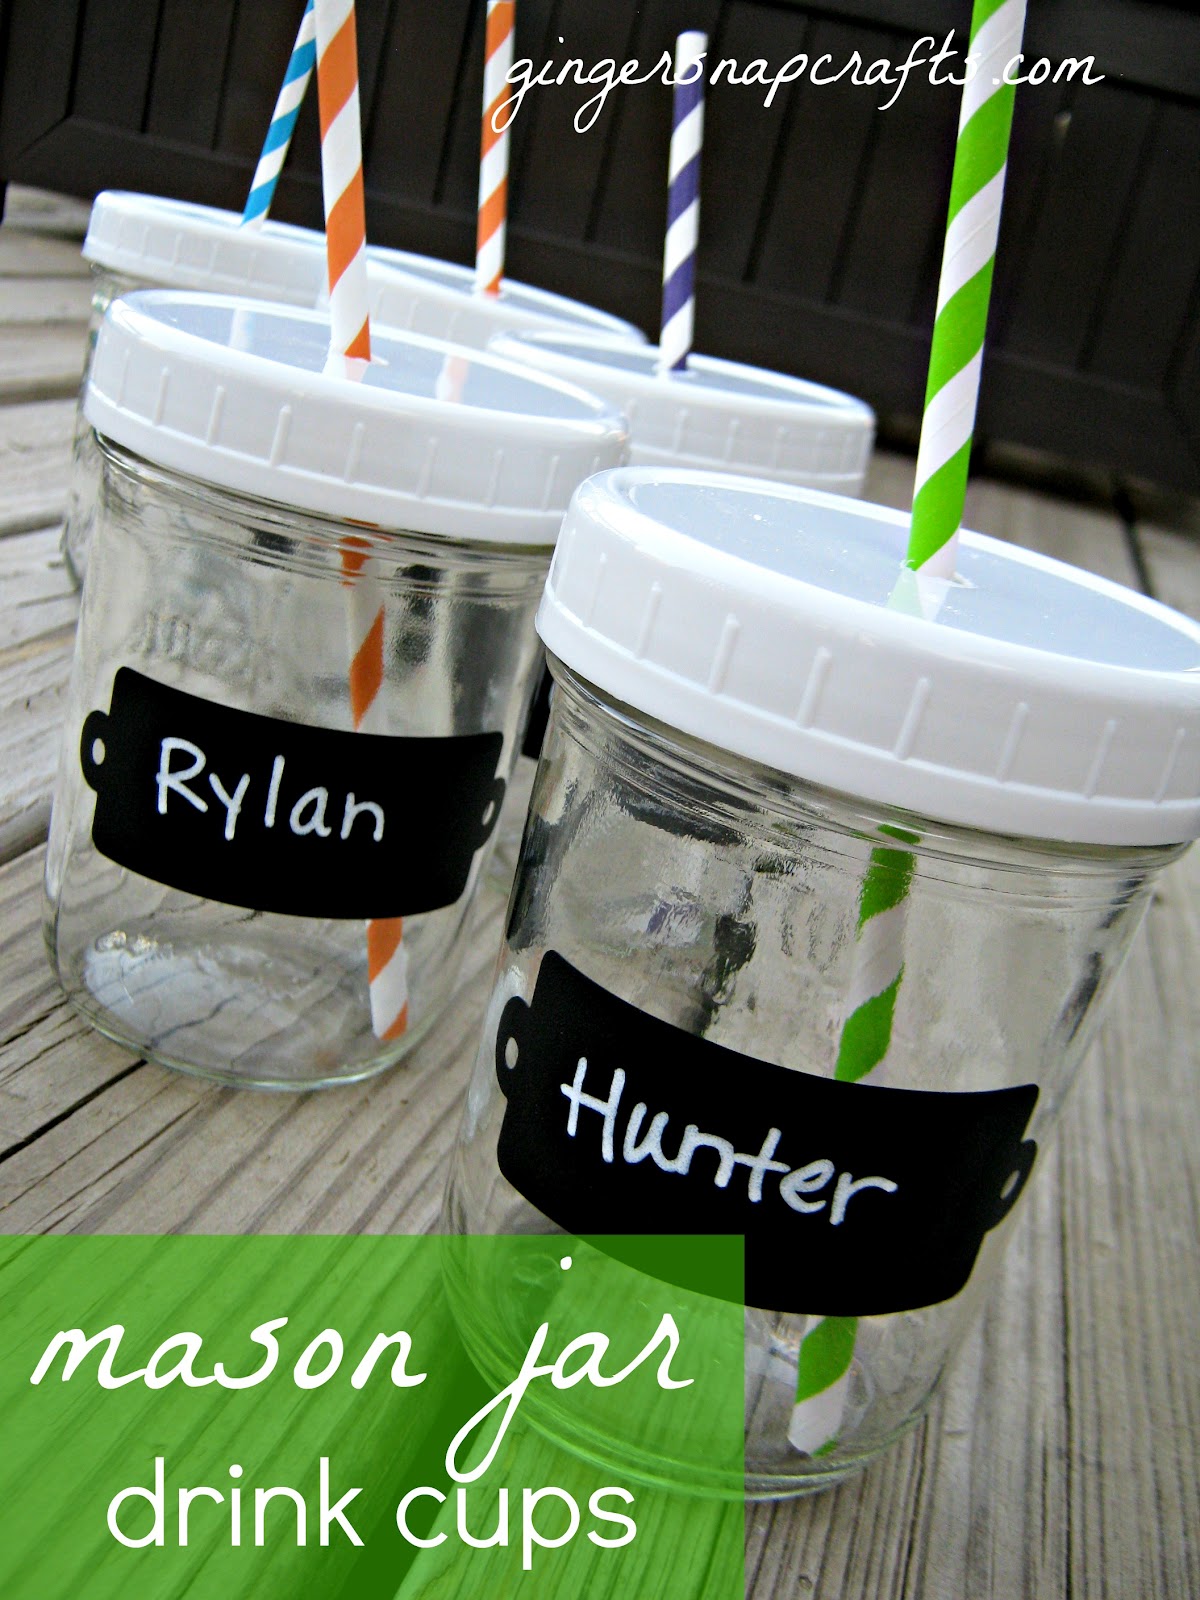 DIY Mason Jar Cup with Straw